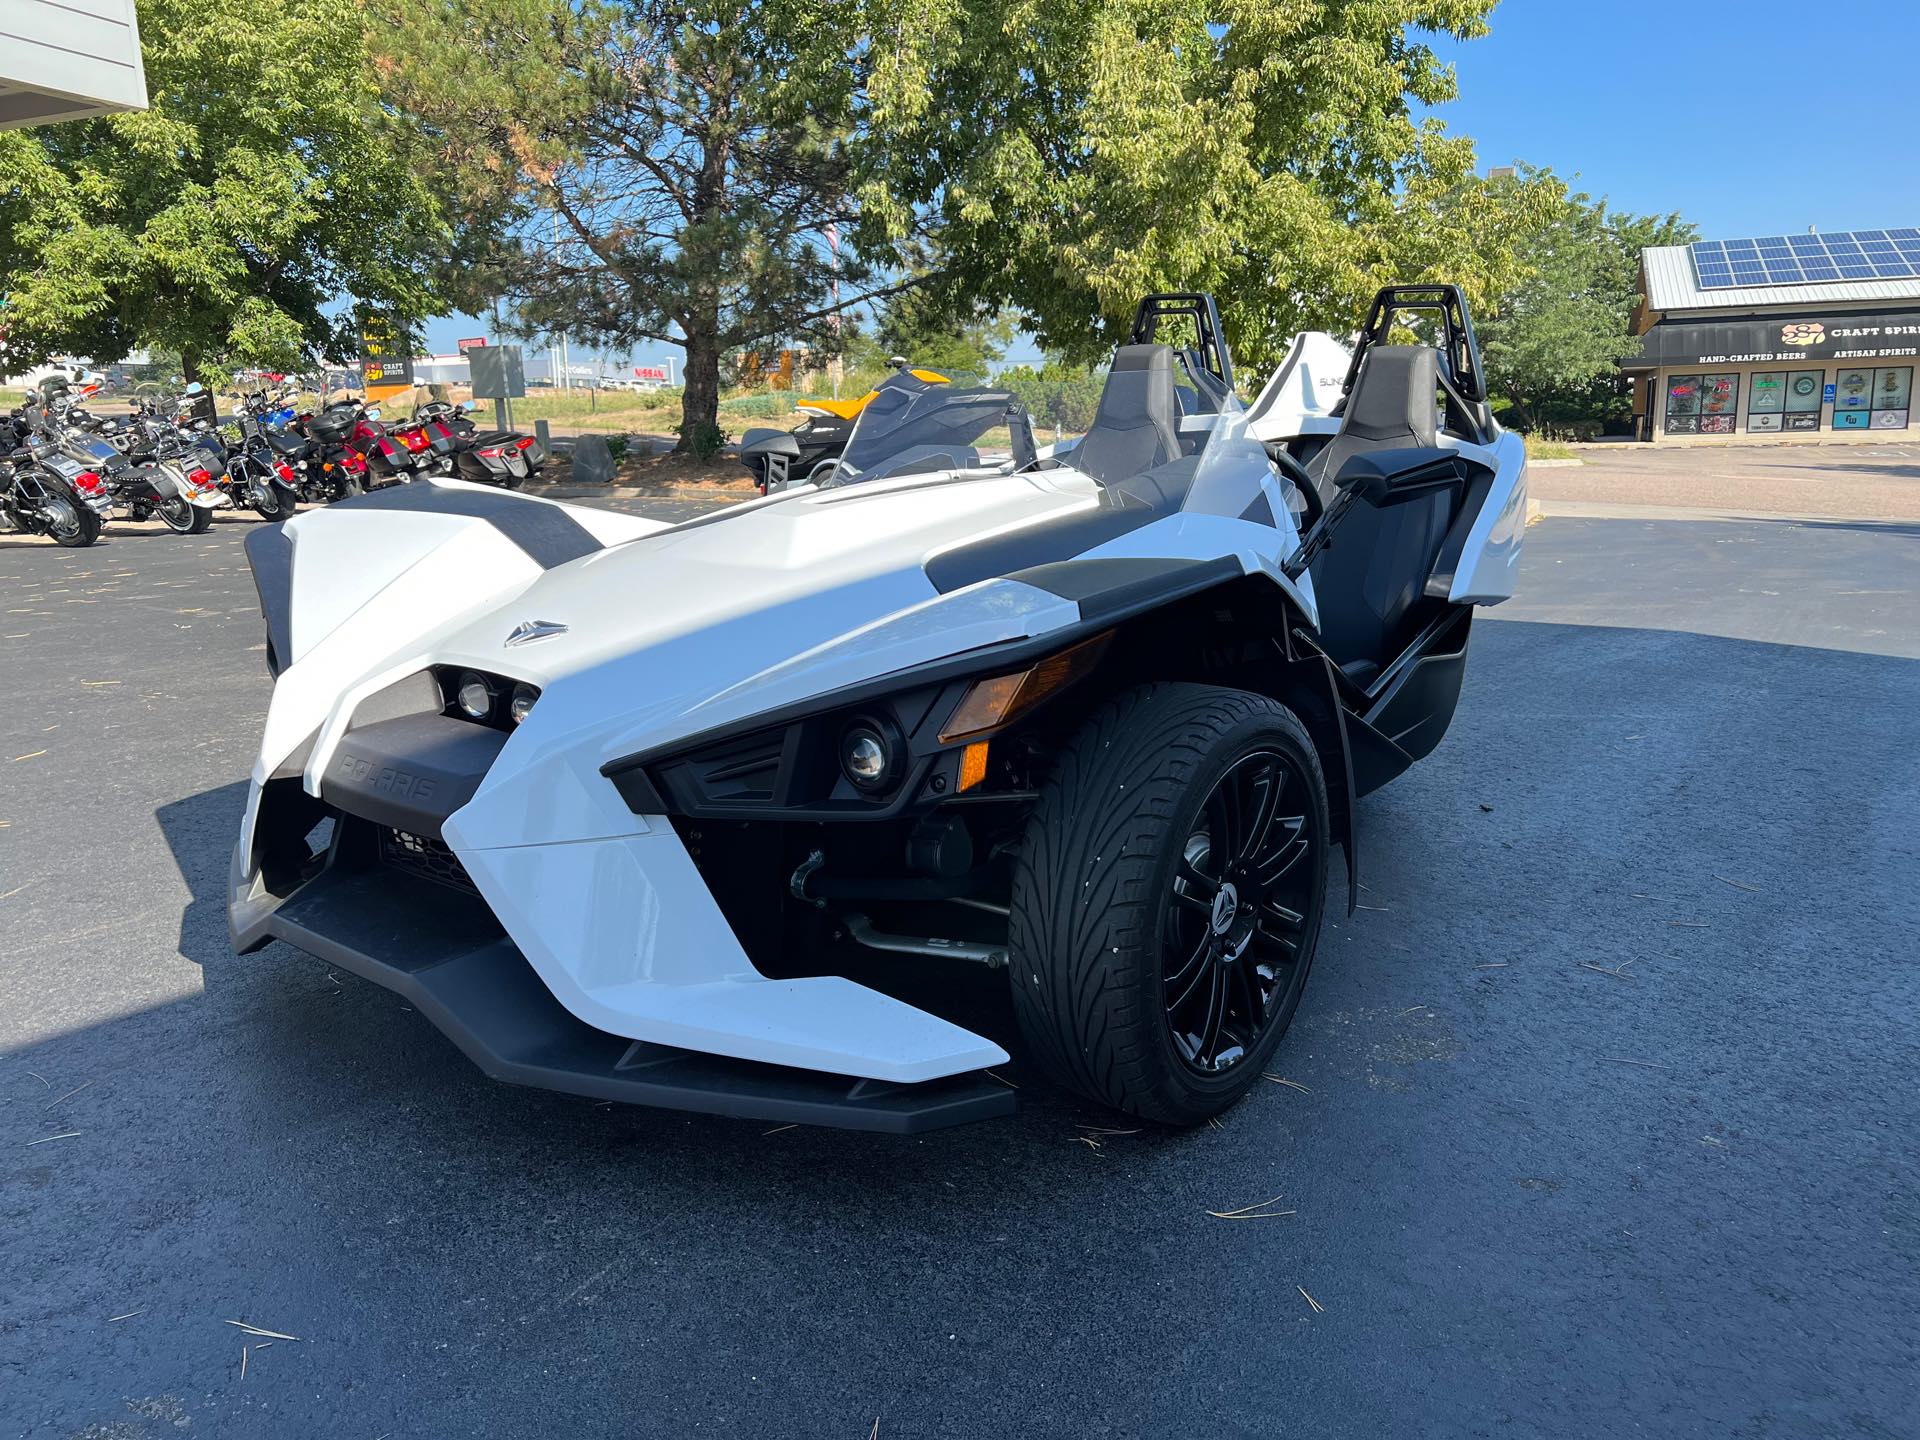 2019 SLINGSHOT Slingshot S at Aces Motorcycles - Fort Collins